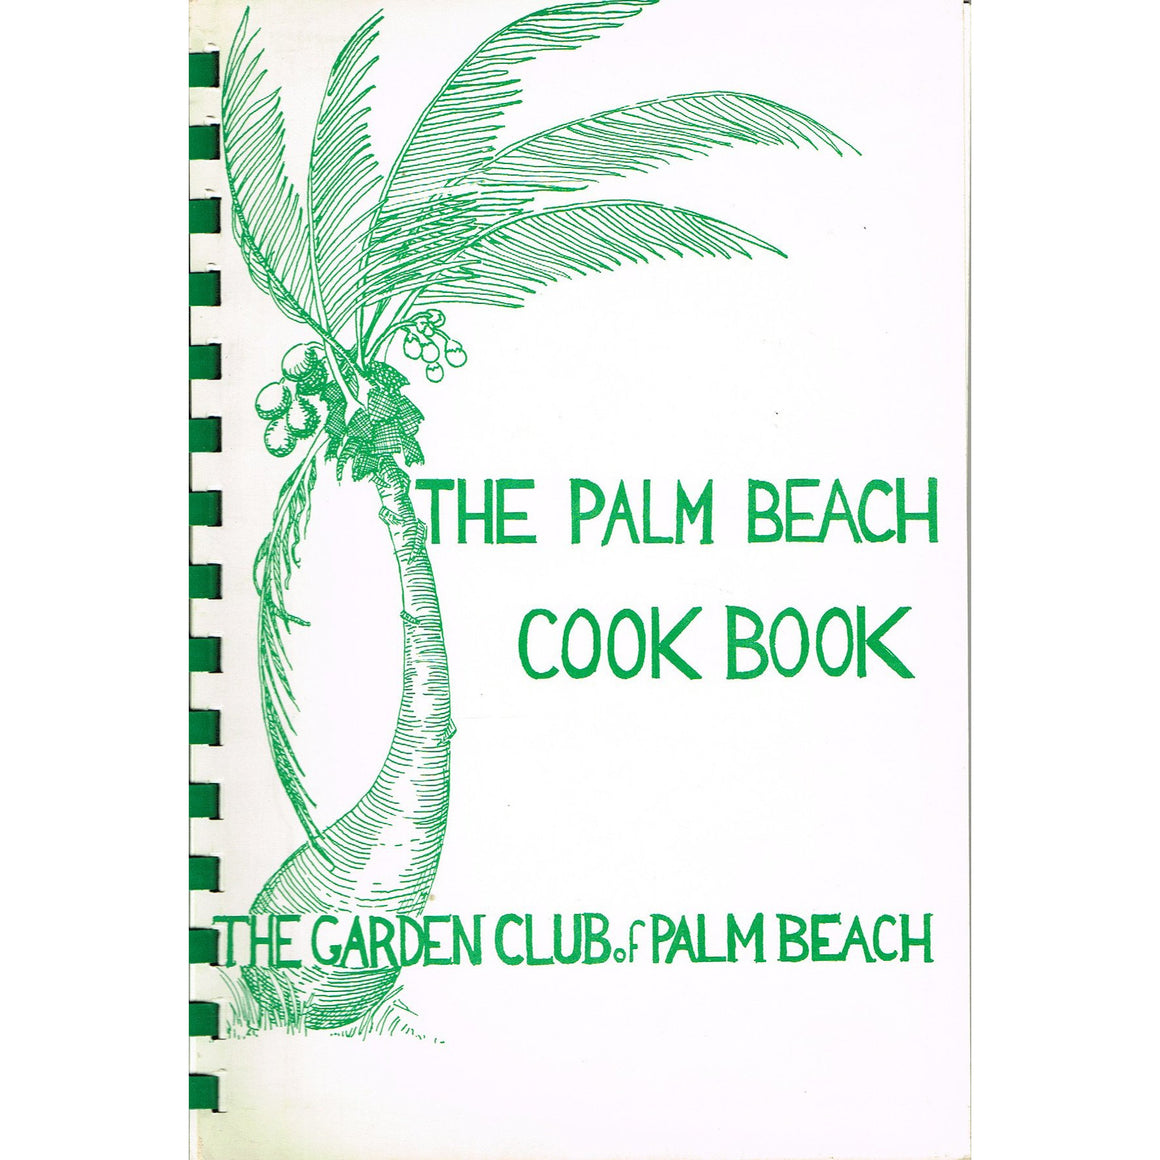 The Palm Beach Cook Book